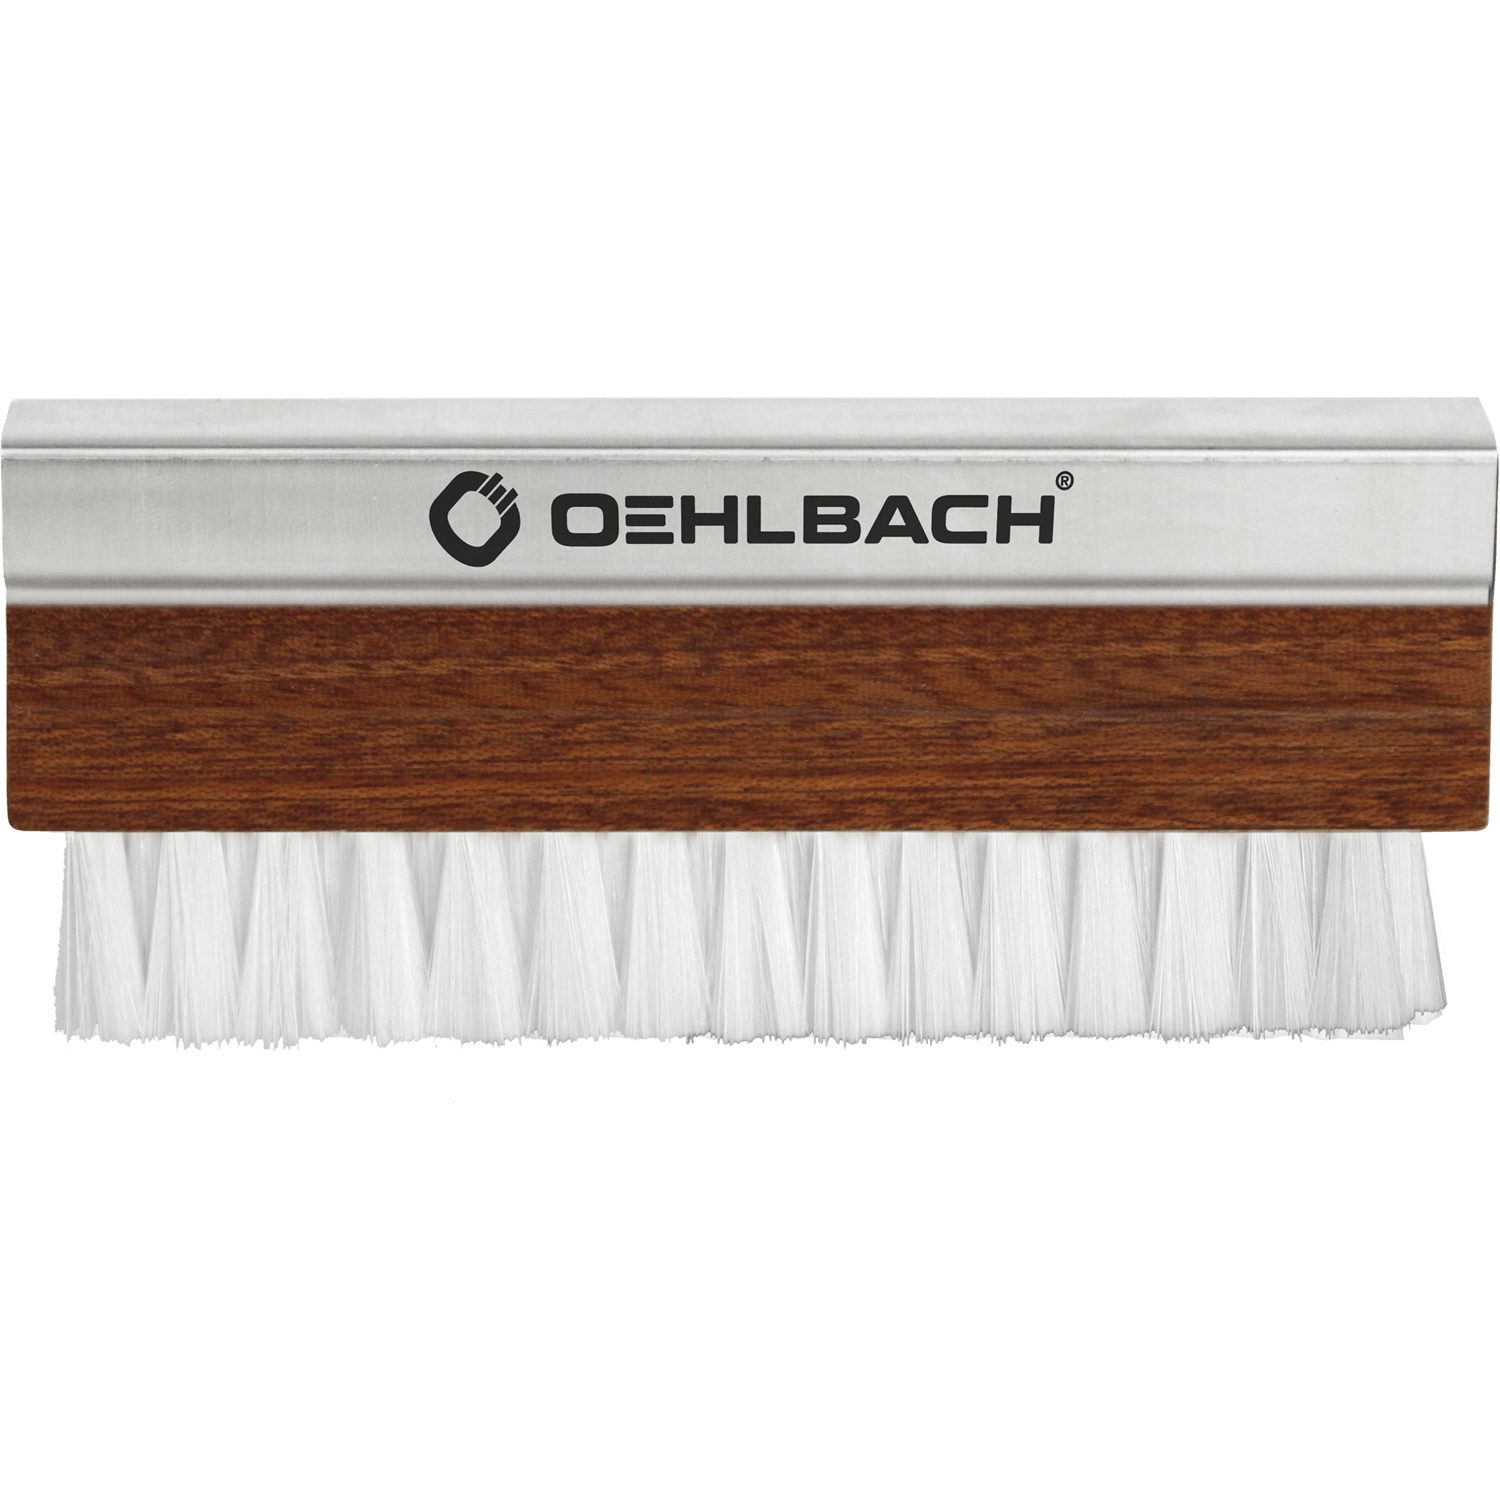 Oehlbach Pro 2614 Brush Schallplattenbürste Plattenspieler Phono